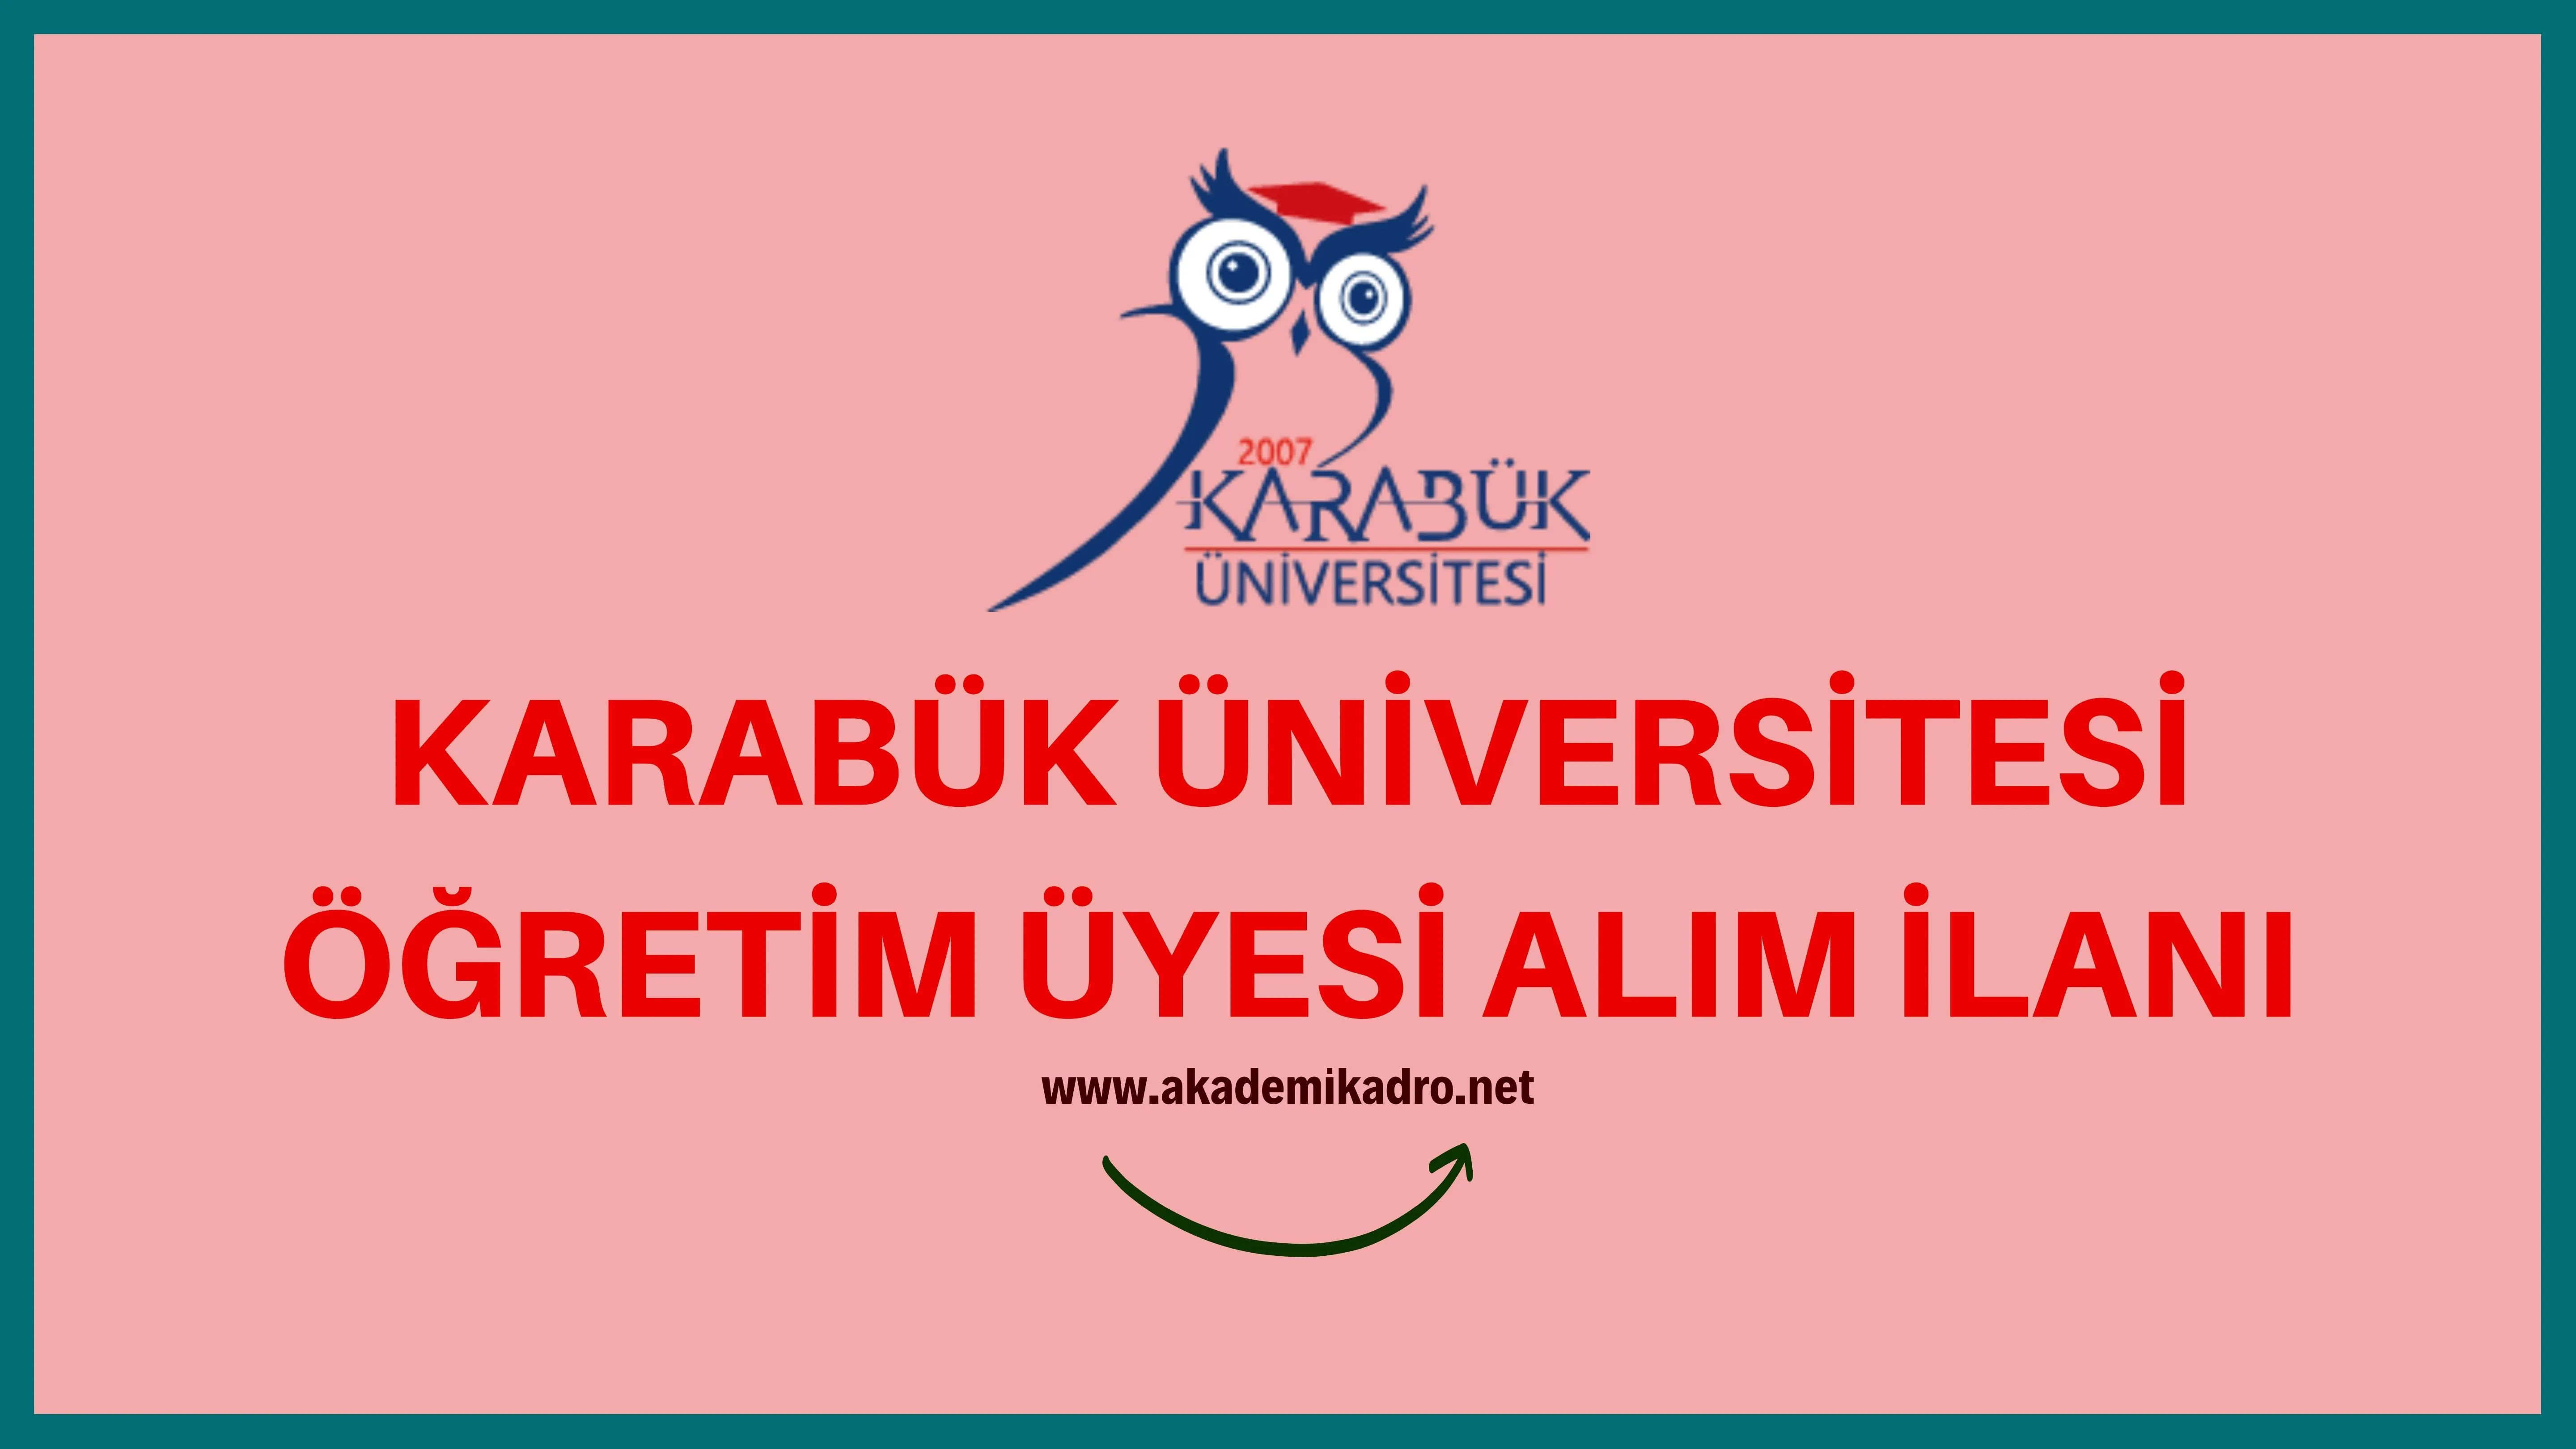 Karabük Üniversitesi birçok alandan 24 öğretim üyesi alacak.